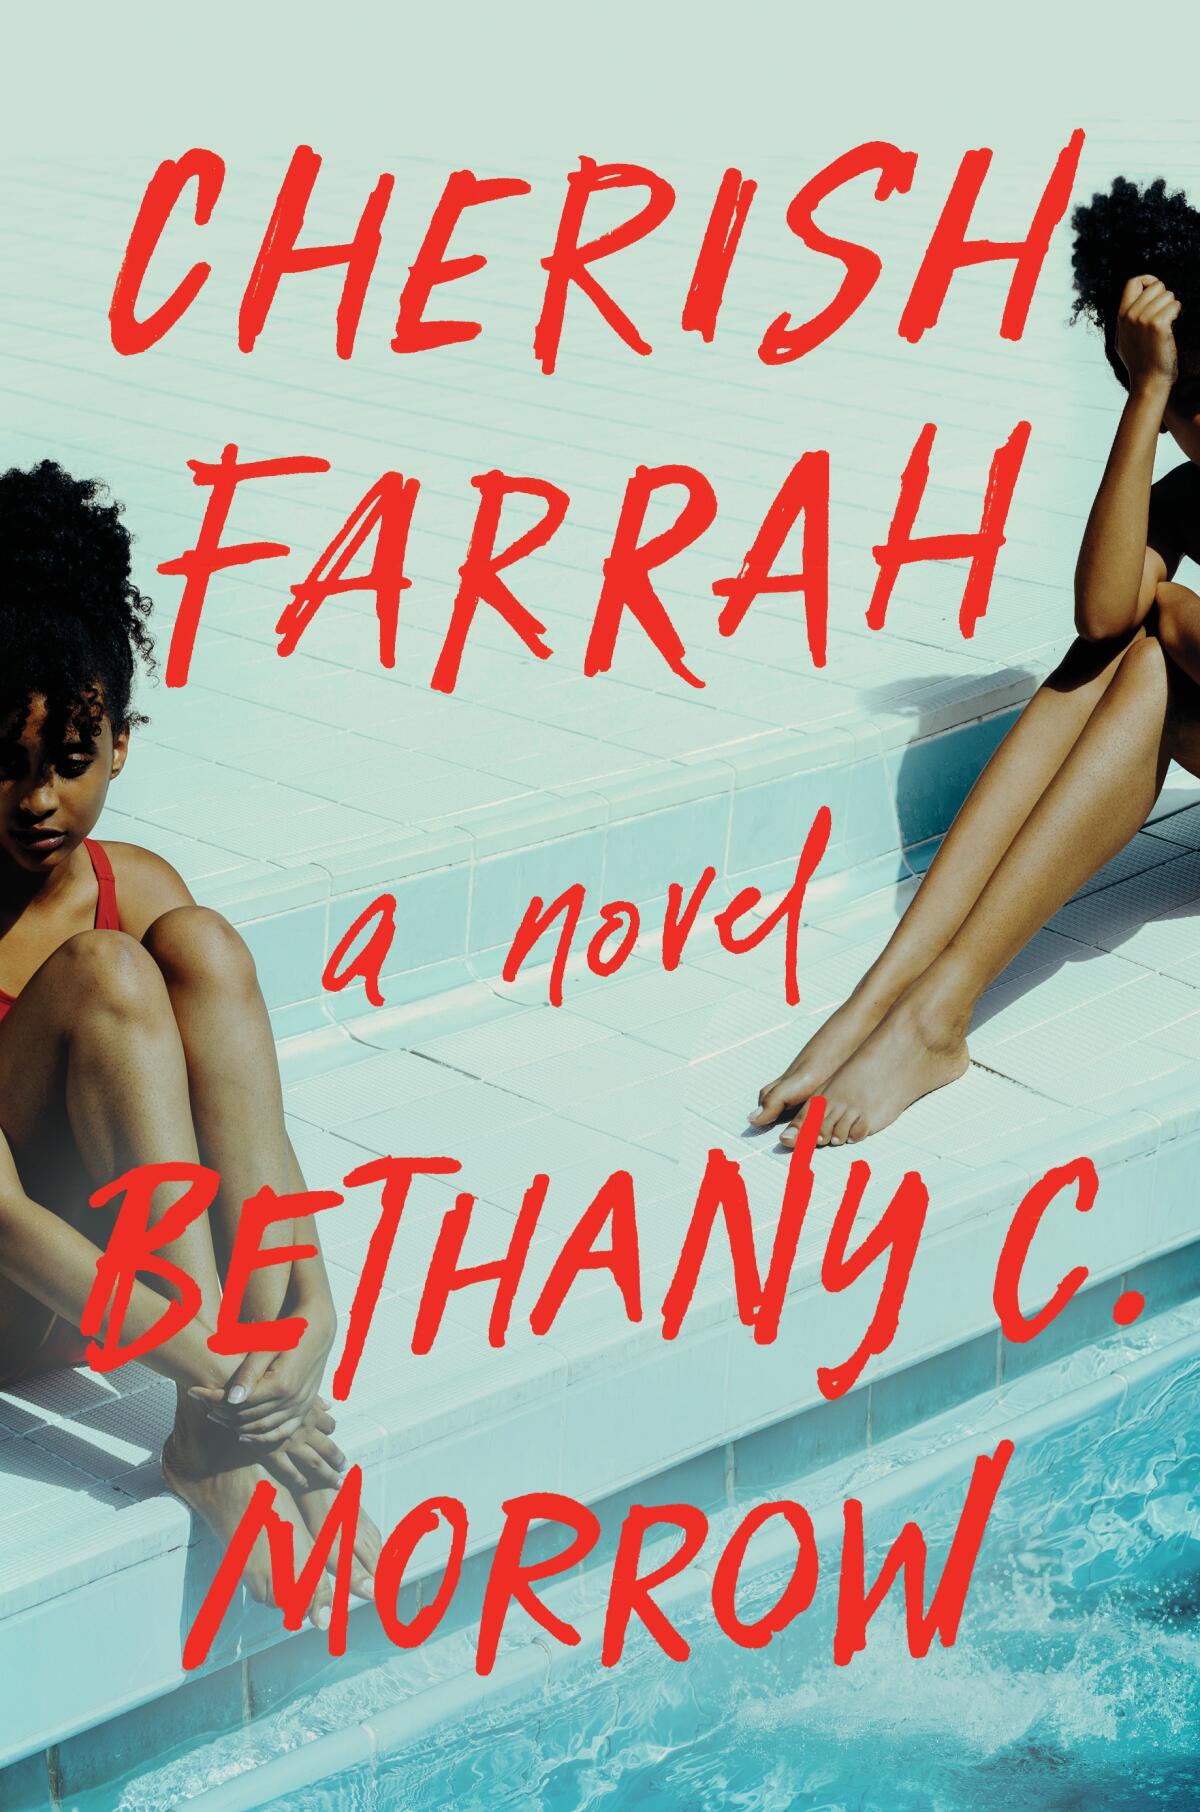 Book cover of "Cherish Farrah" by Bethany C. Morrow